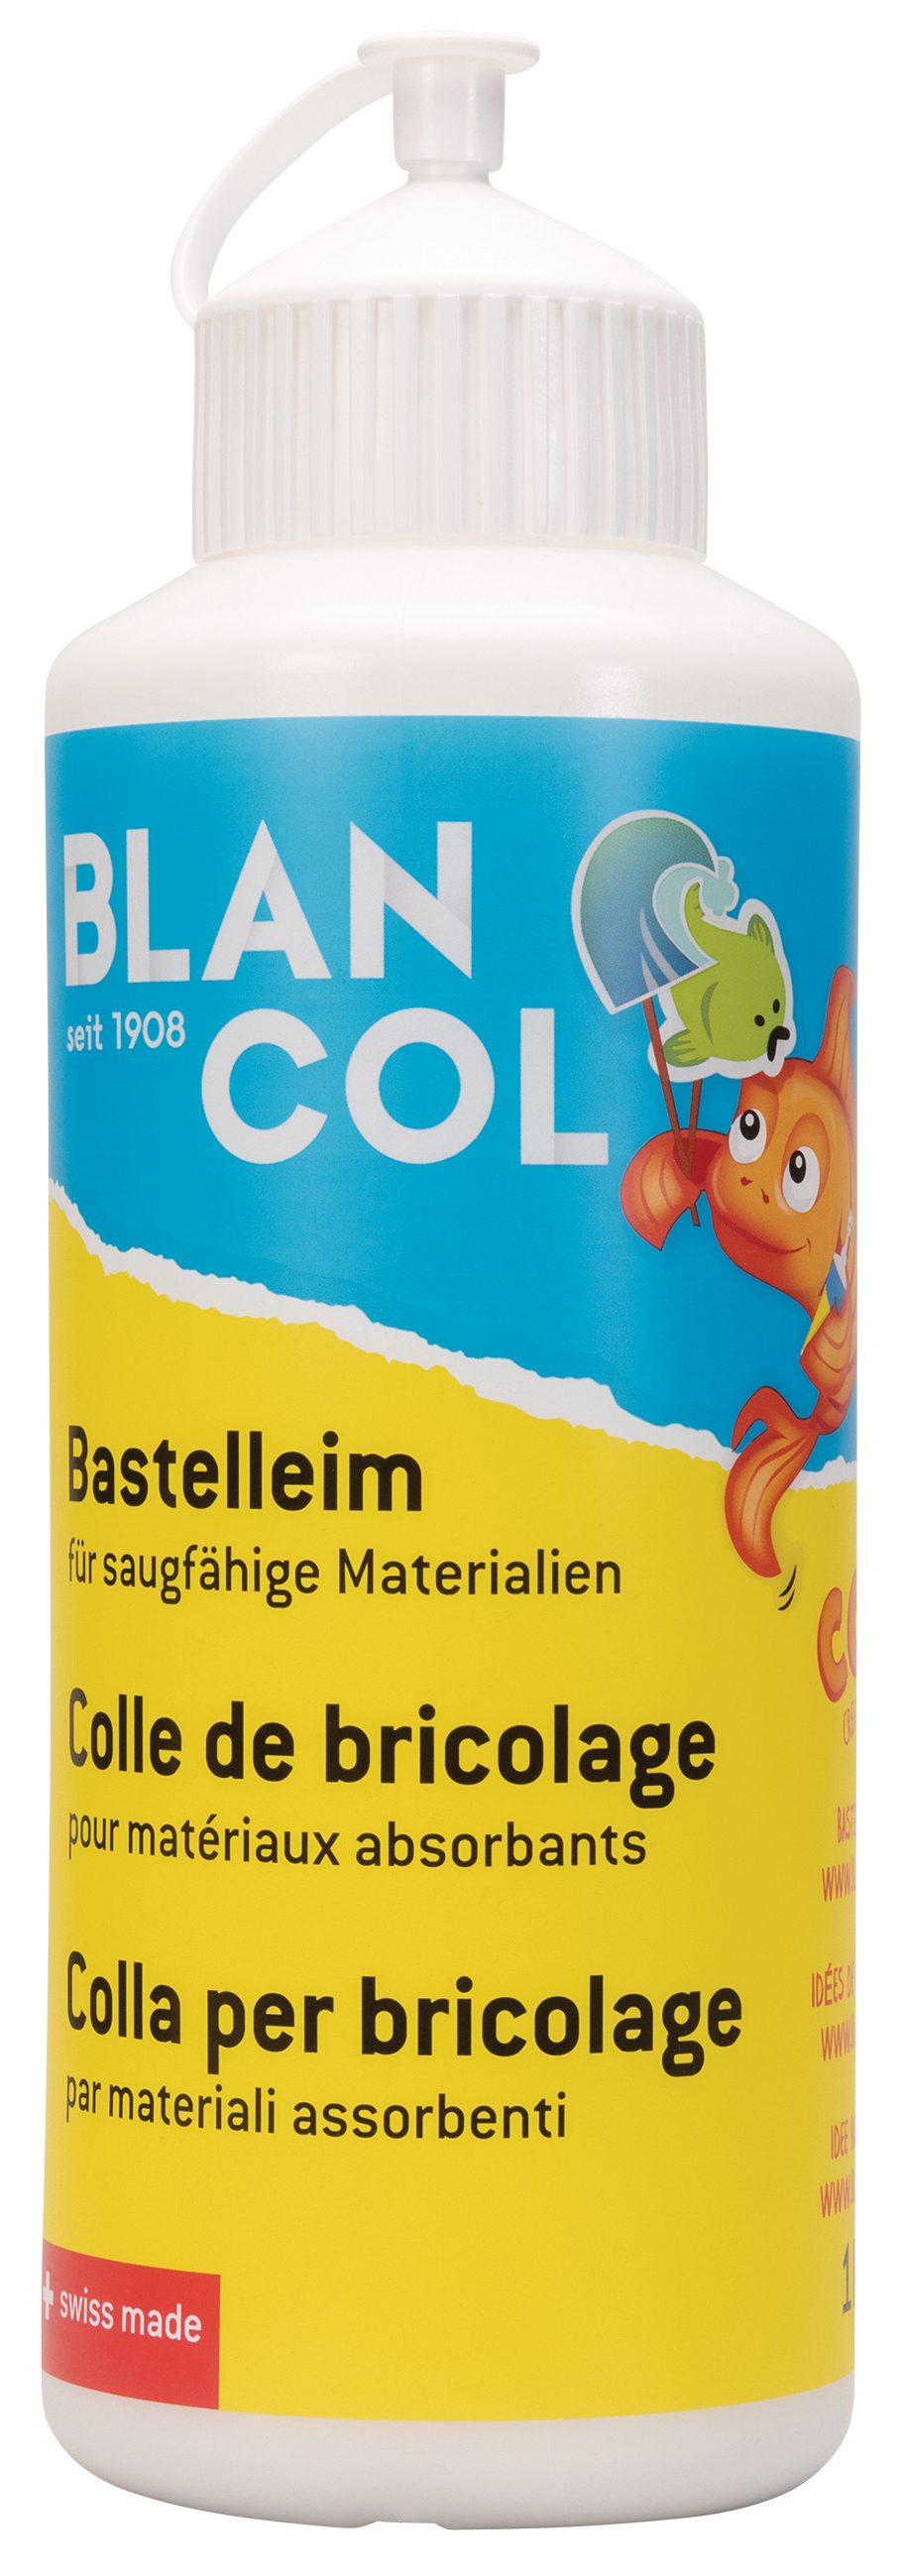 BLANCOL Bastelleim 31305 1000g